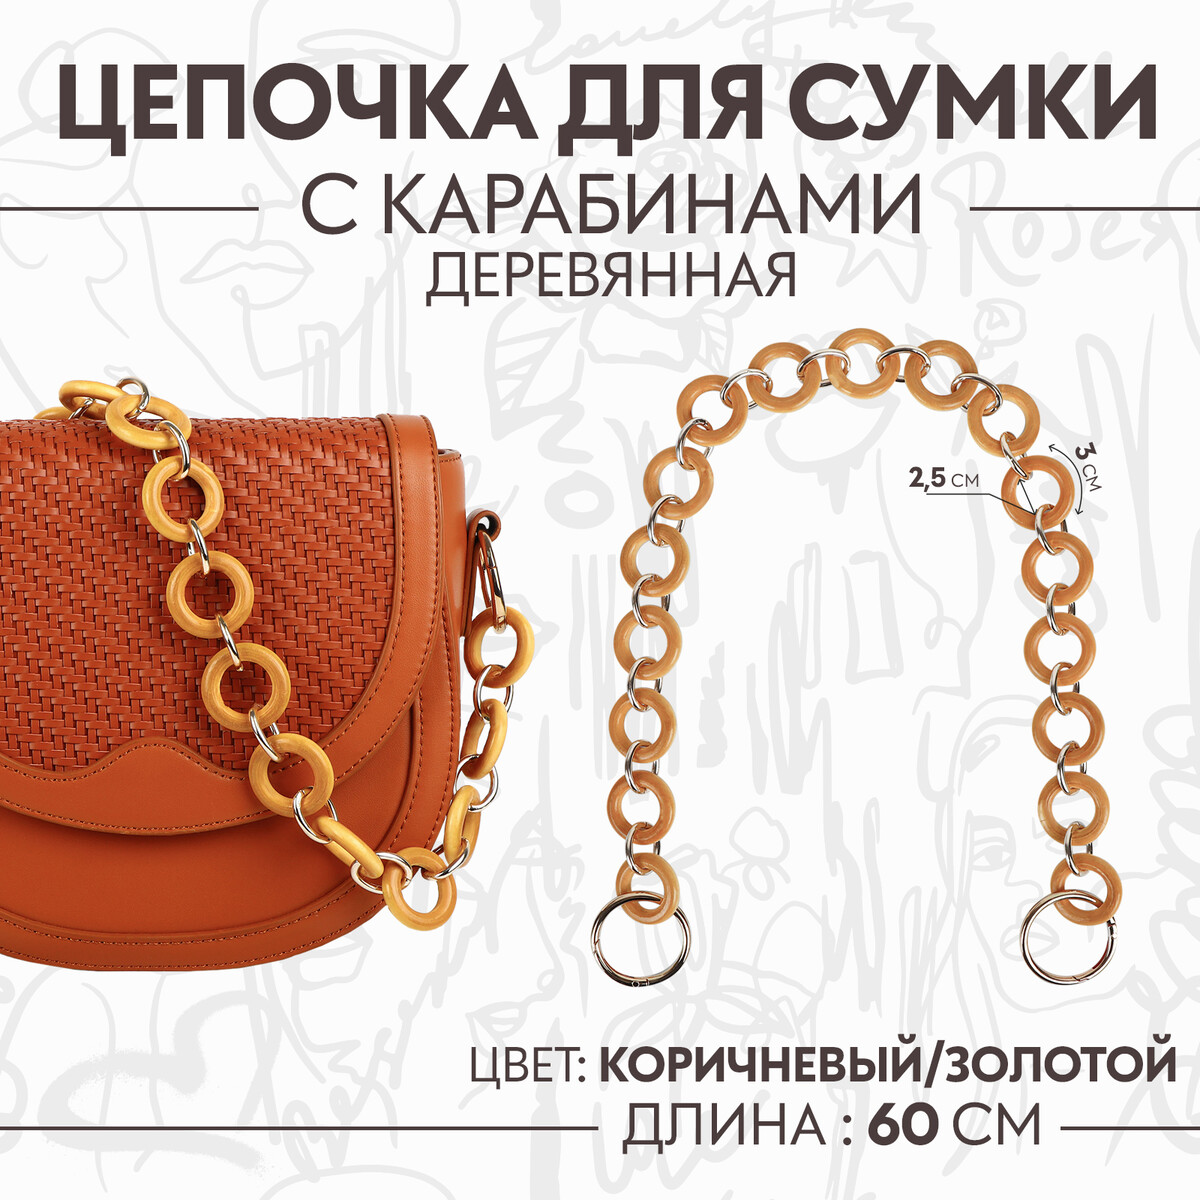 Цепочка для сумки, с карабинами, деревянная, d = 2,5/3 см, 60 см, цвет коричневый/золотой рама 20 20 деревянная цв коричневый темный со стеклом двуреченский